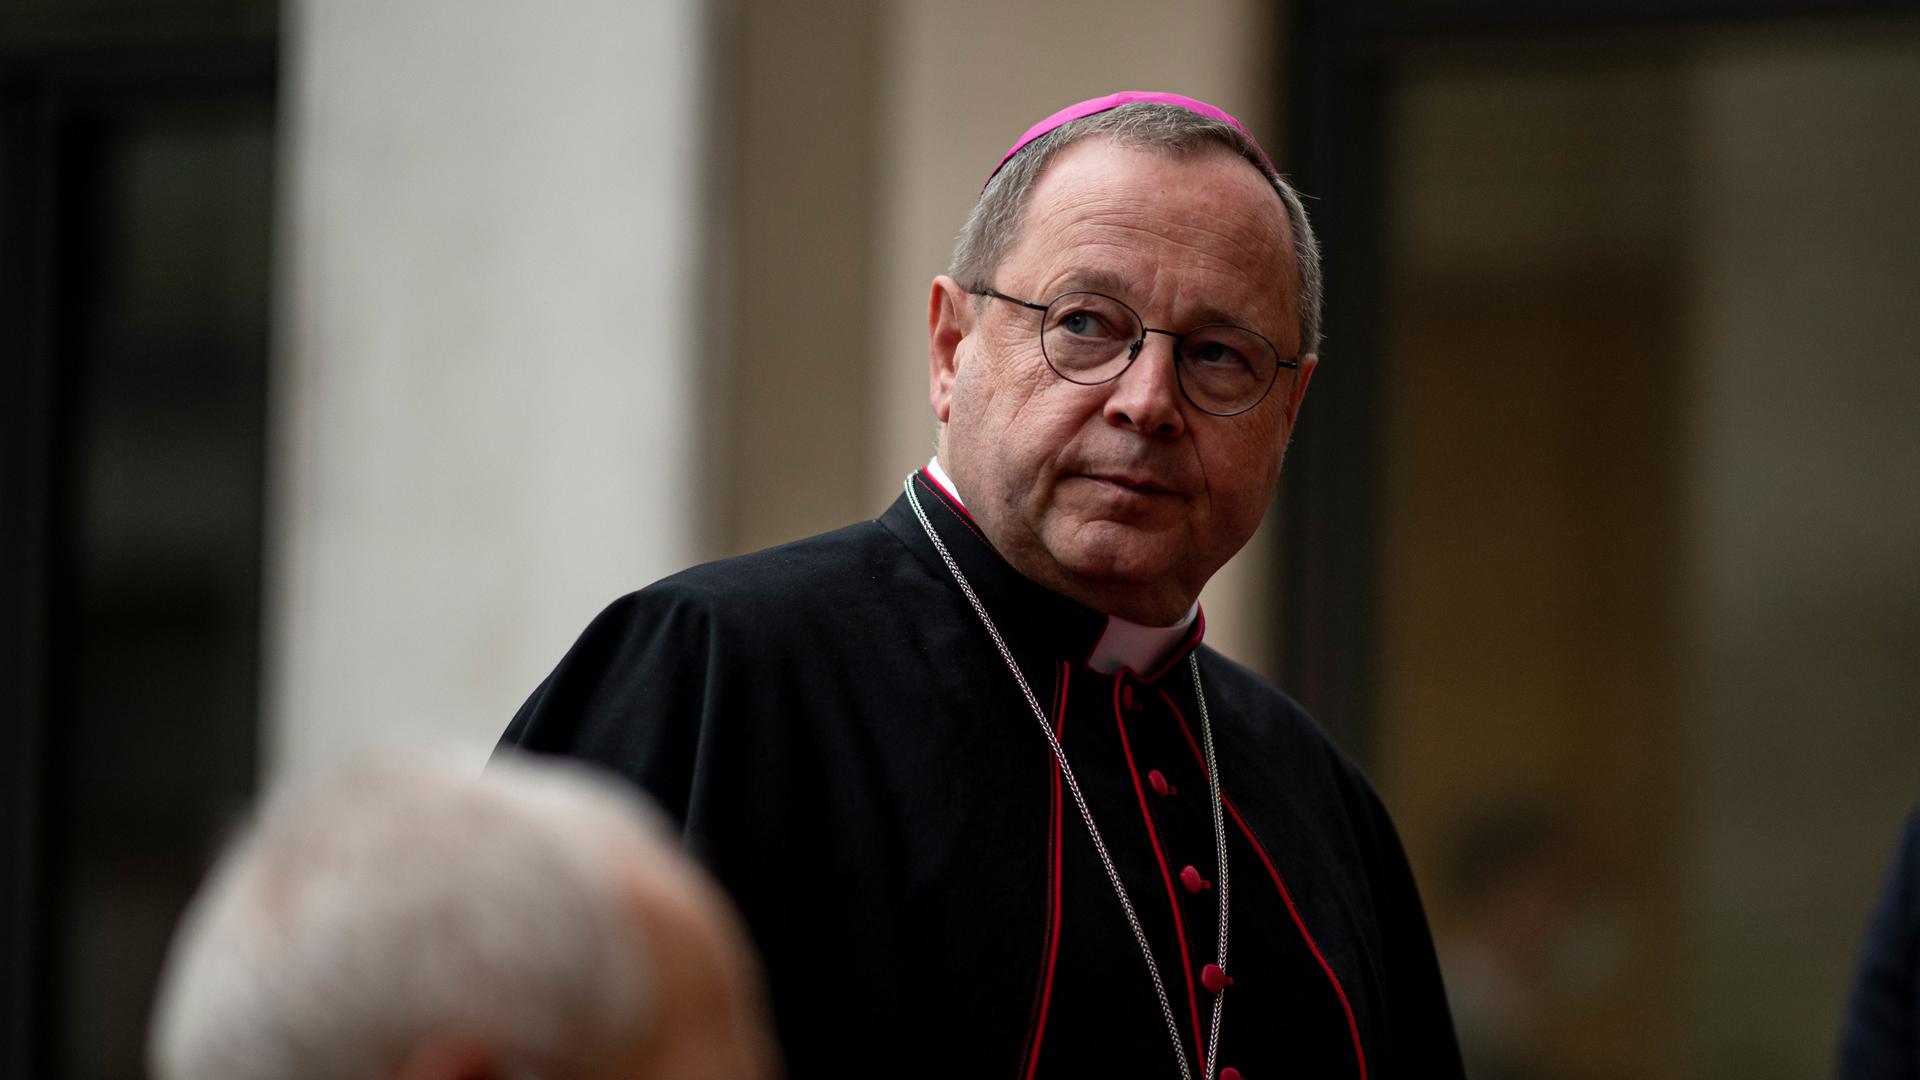 Silvester-Predigt - Bischof Bätzing: Kirche und Gesellschaft brauchen Mut zu Veränderung